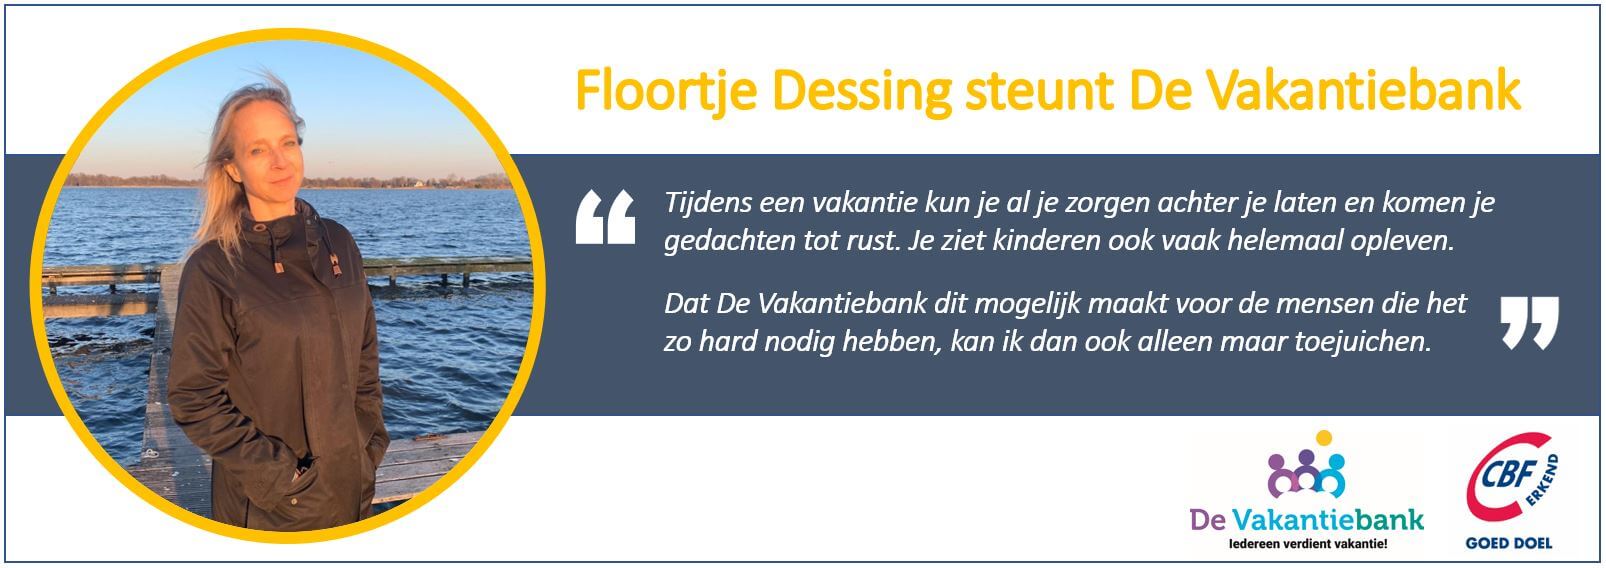 Floortje Dessing vakantiebank